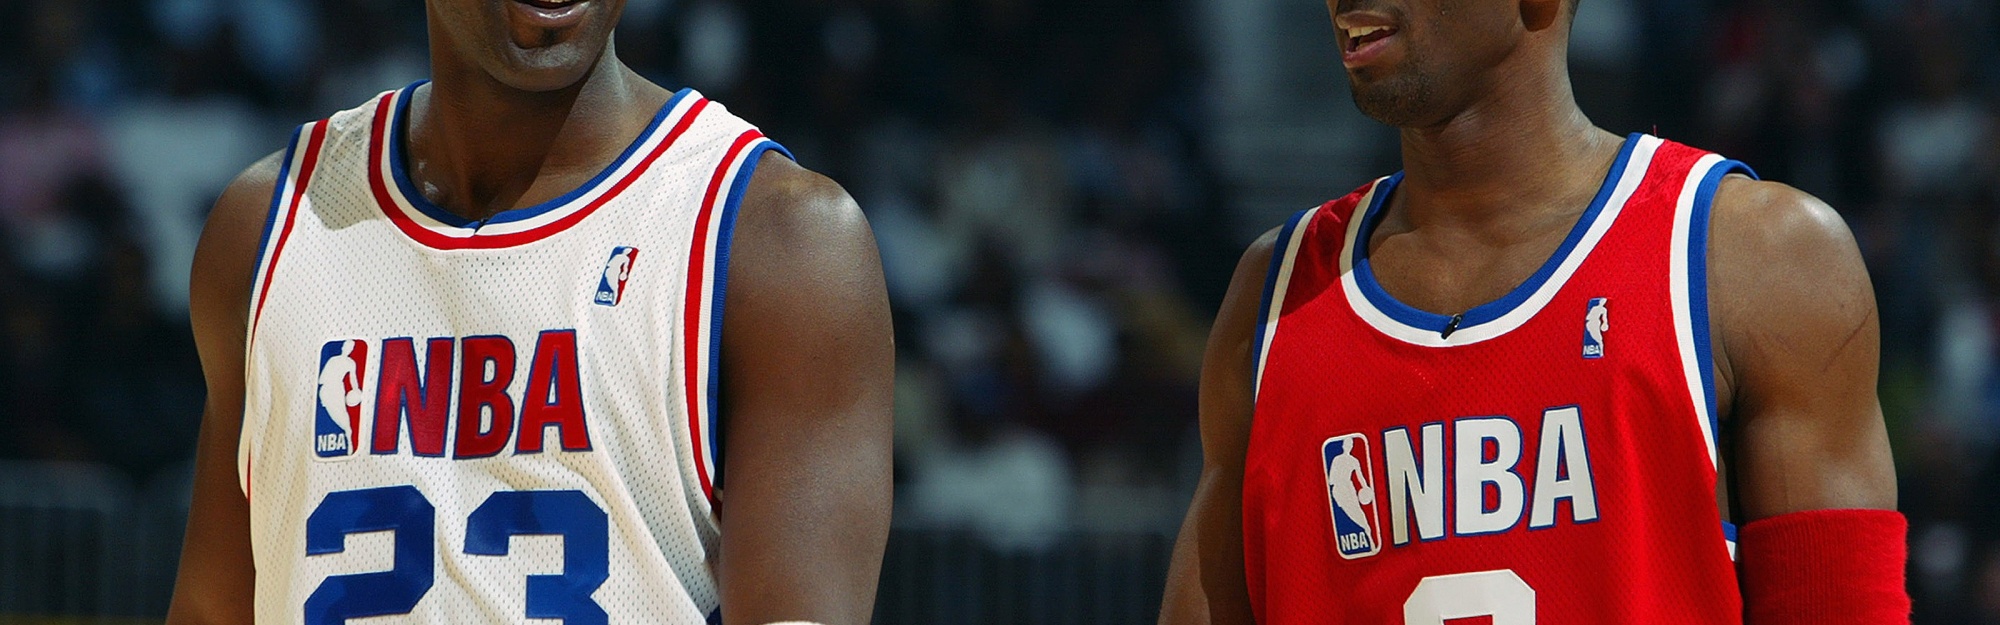 NBA Legends Jordan And Bryant